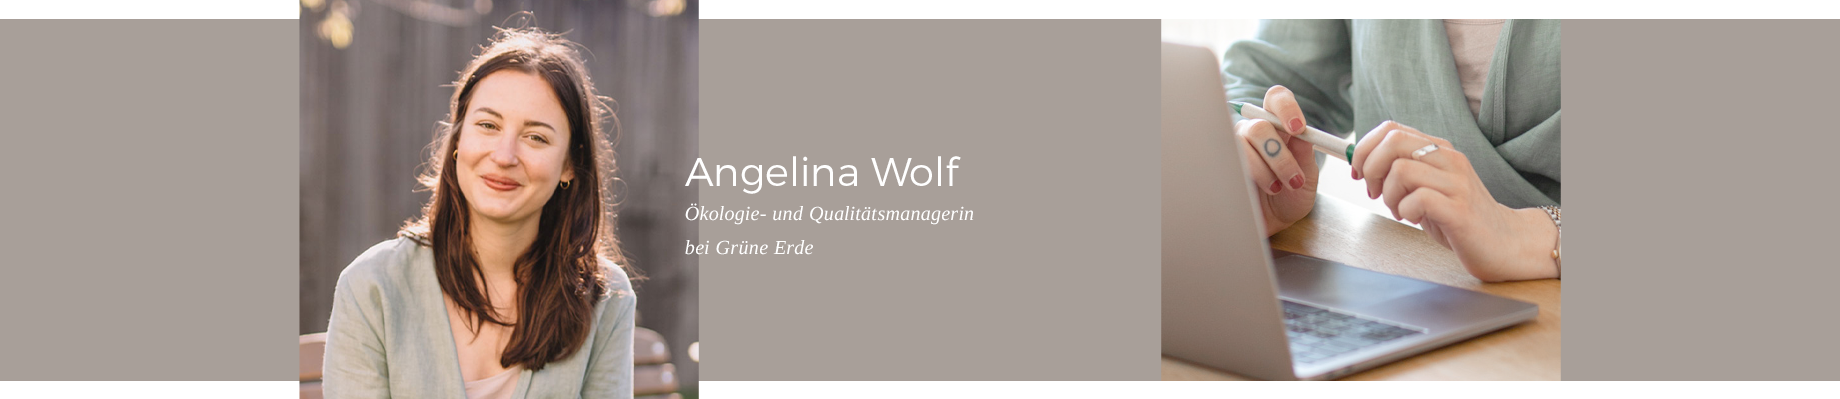 Erfahren Sie mehr: Unsere Mitarbeiterin Angelina Wolf - Ökologie und Qualitätsmanagerin bei Grüne Erde